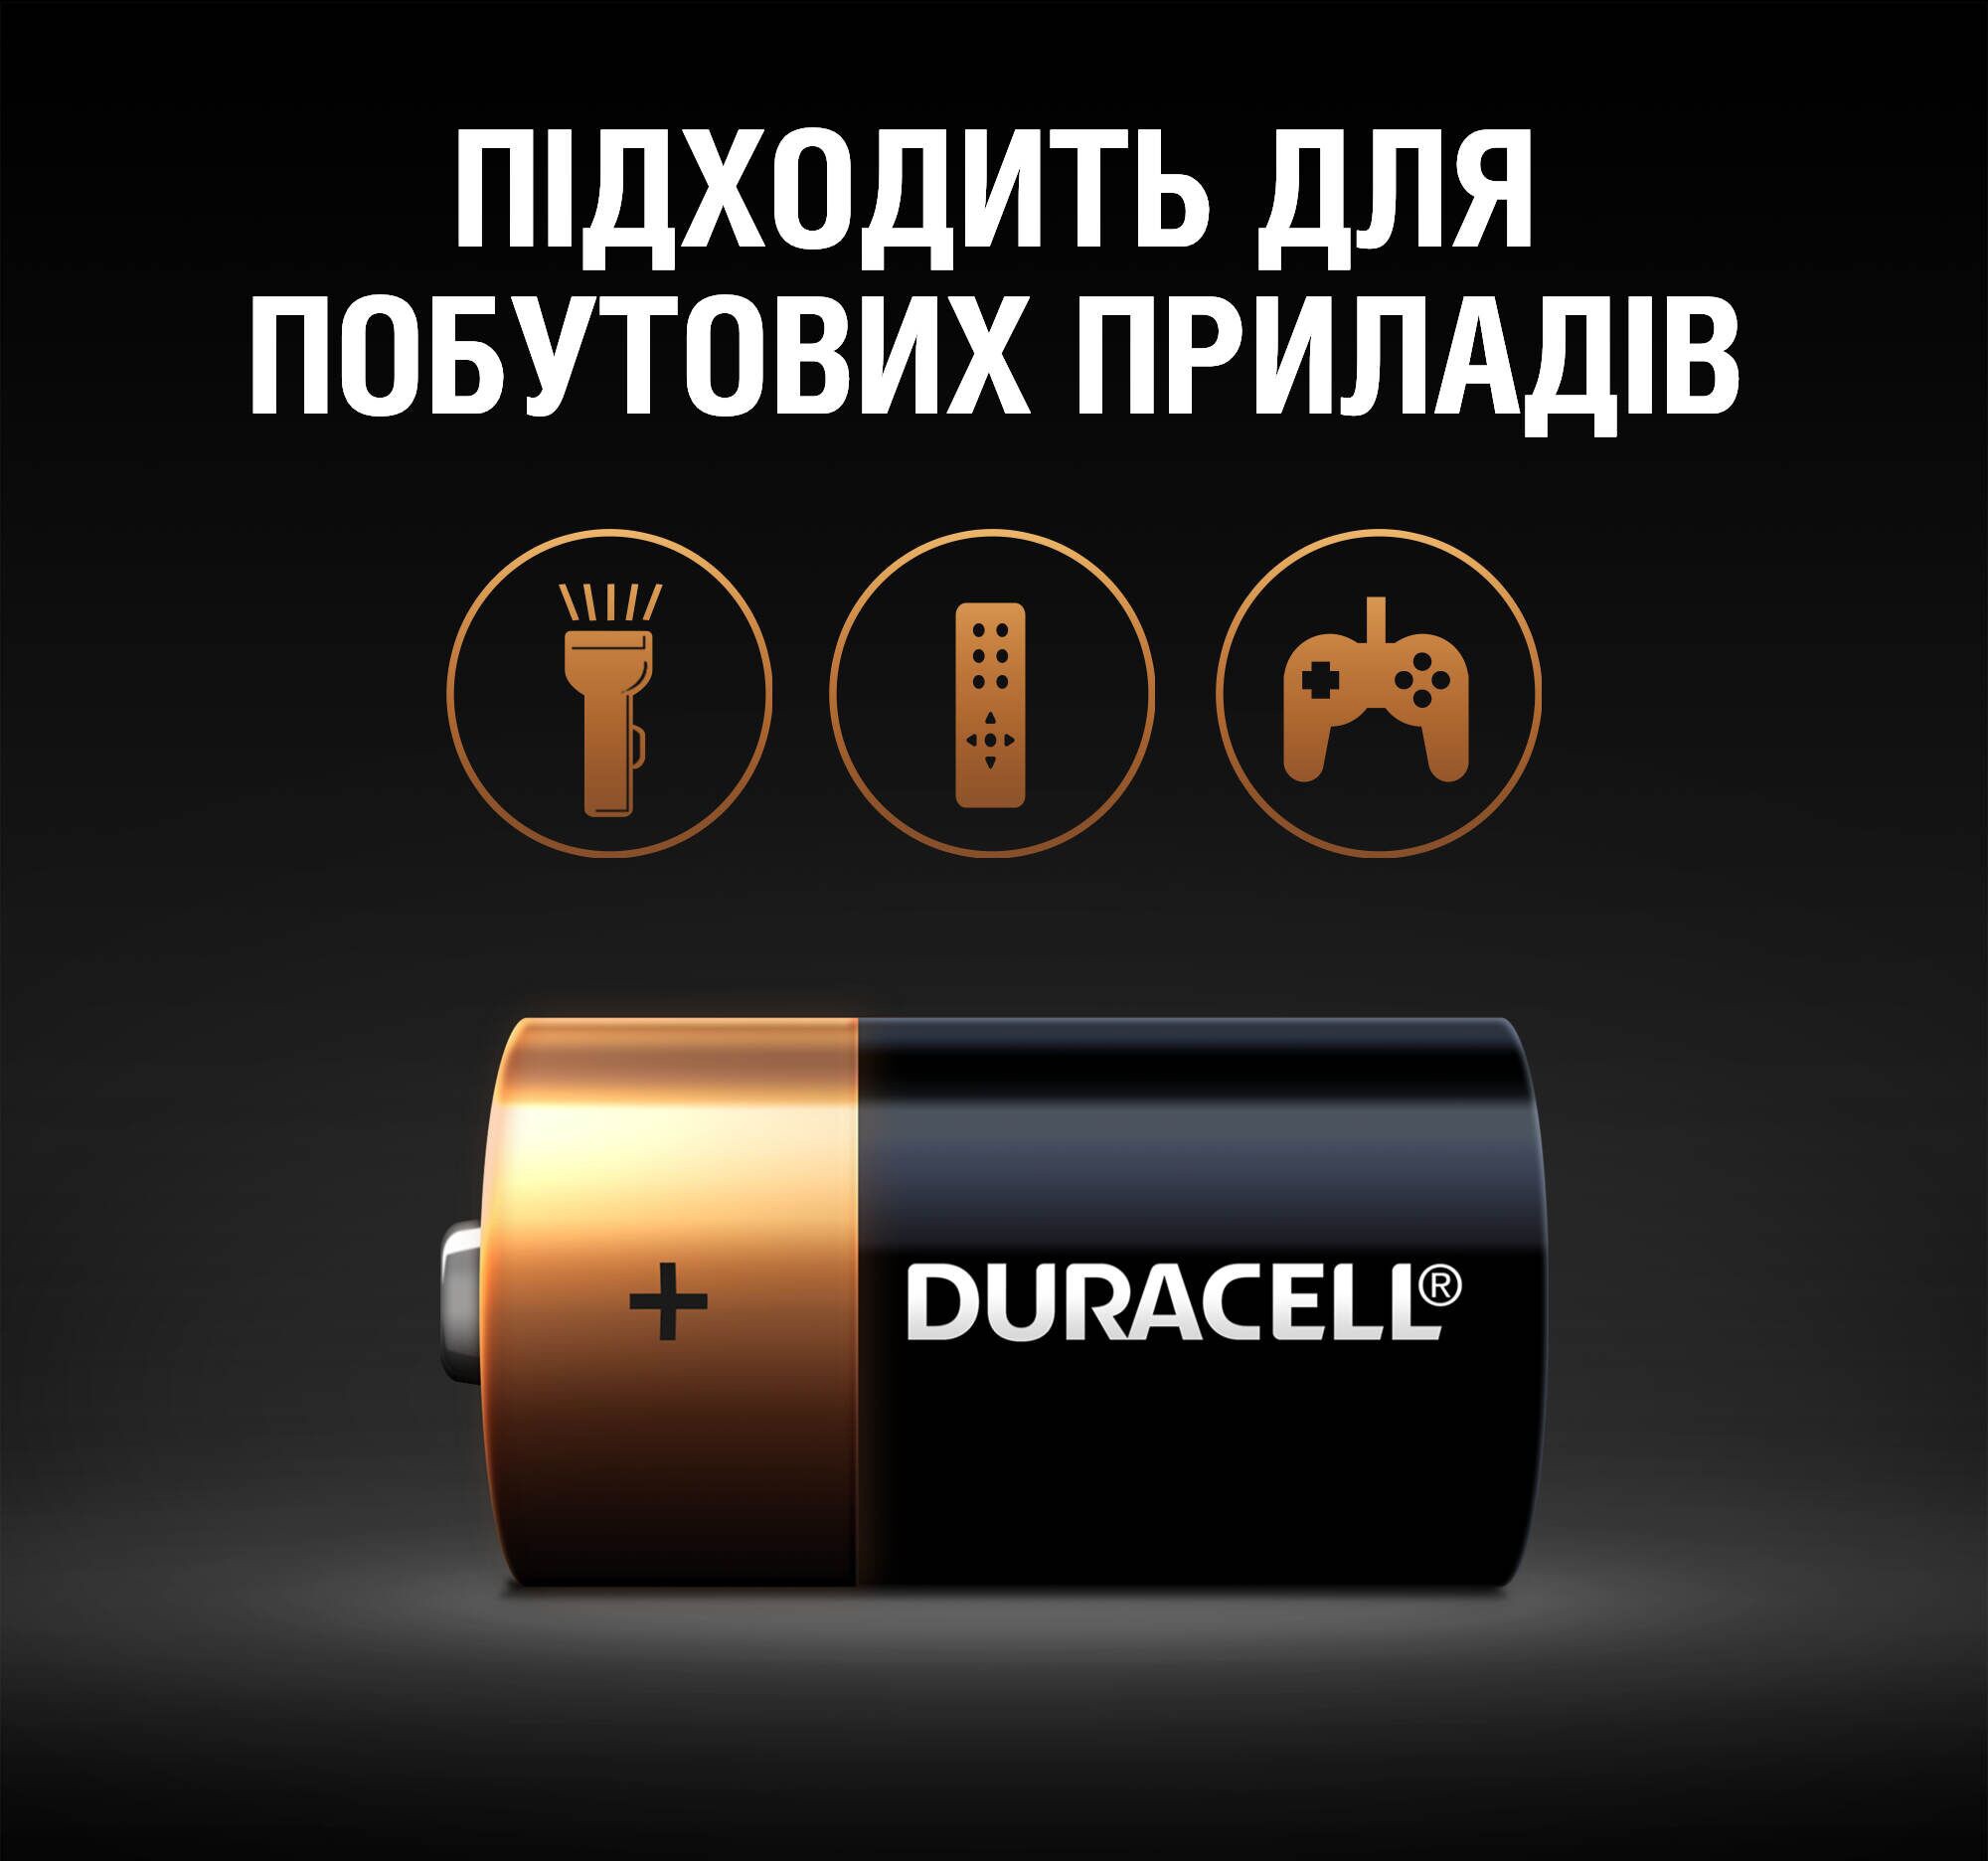 Батарейка Duracell C LR14/MN1400 2шт. отзывы - изображения 5